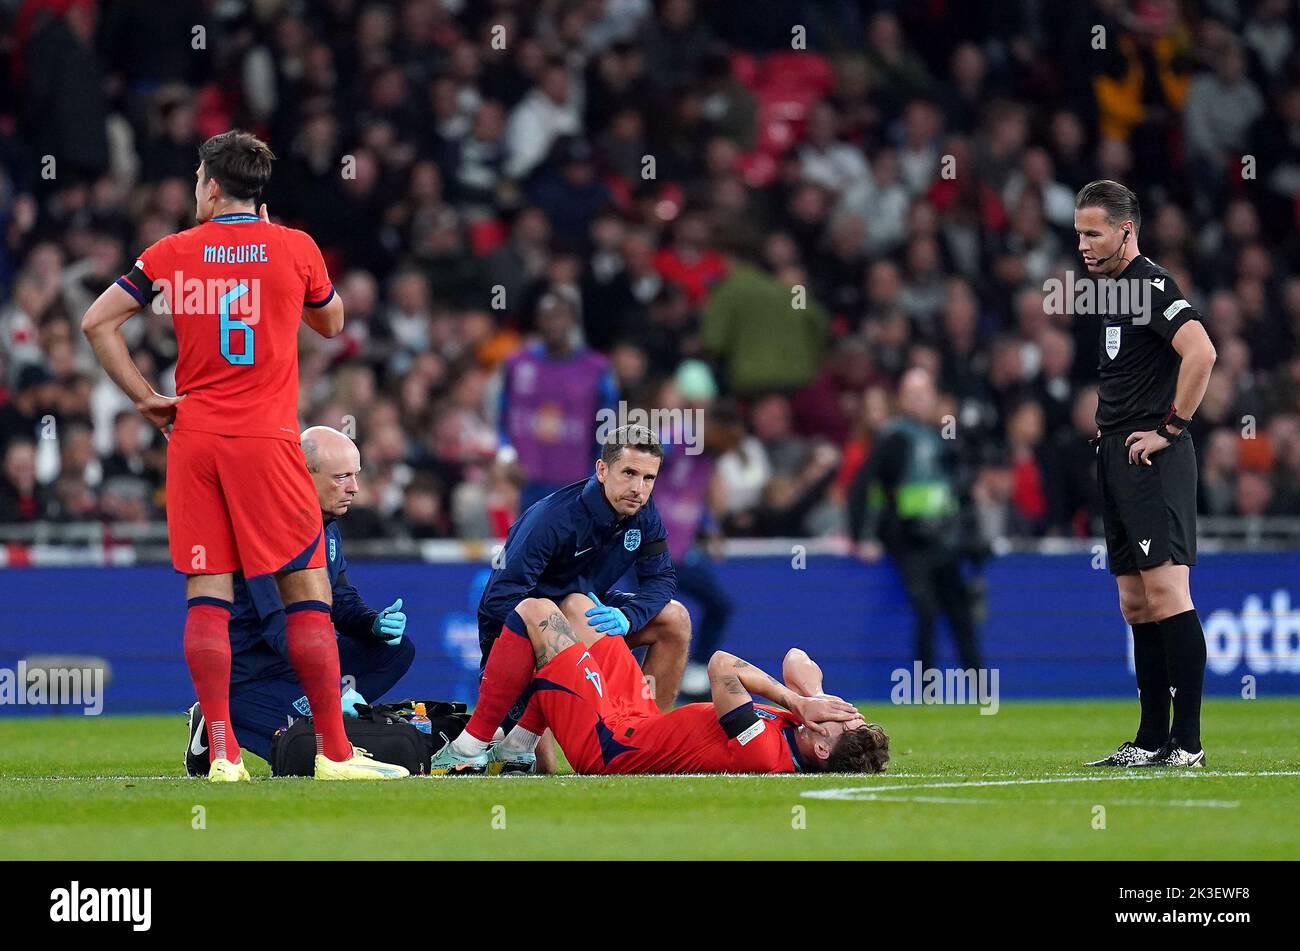 El británico John Stones recibe tratamiento por una lesión durante el partido de la Liga de las Naciones de la UEFA en el estadio de Wembley, Londres. Fecha de la foto: Lunes 26 de septiembre de 2022. Foto de stock